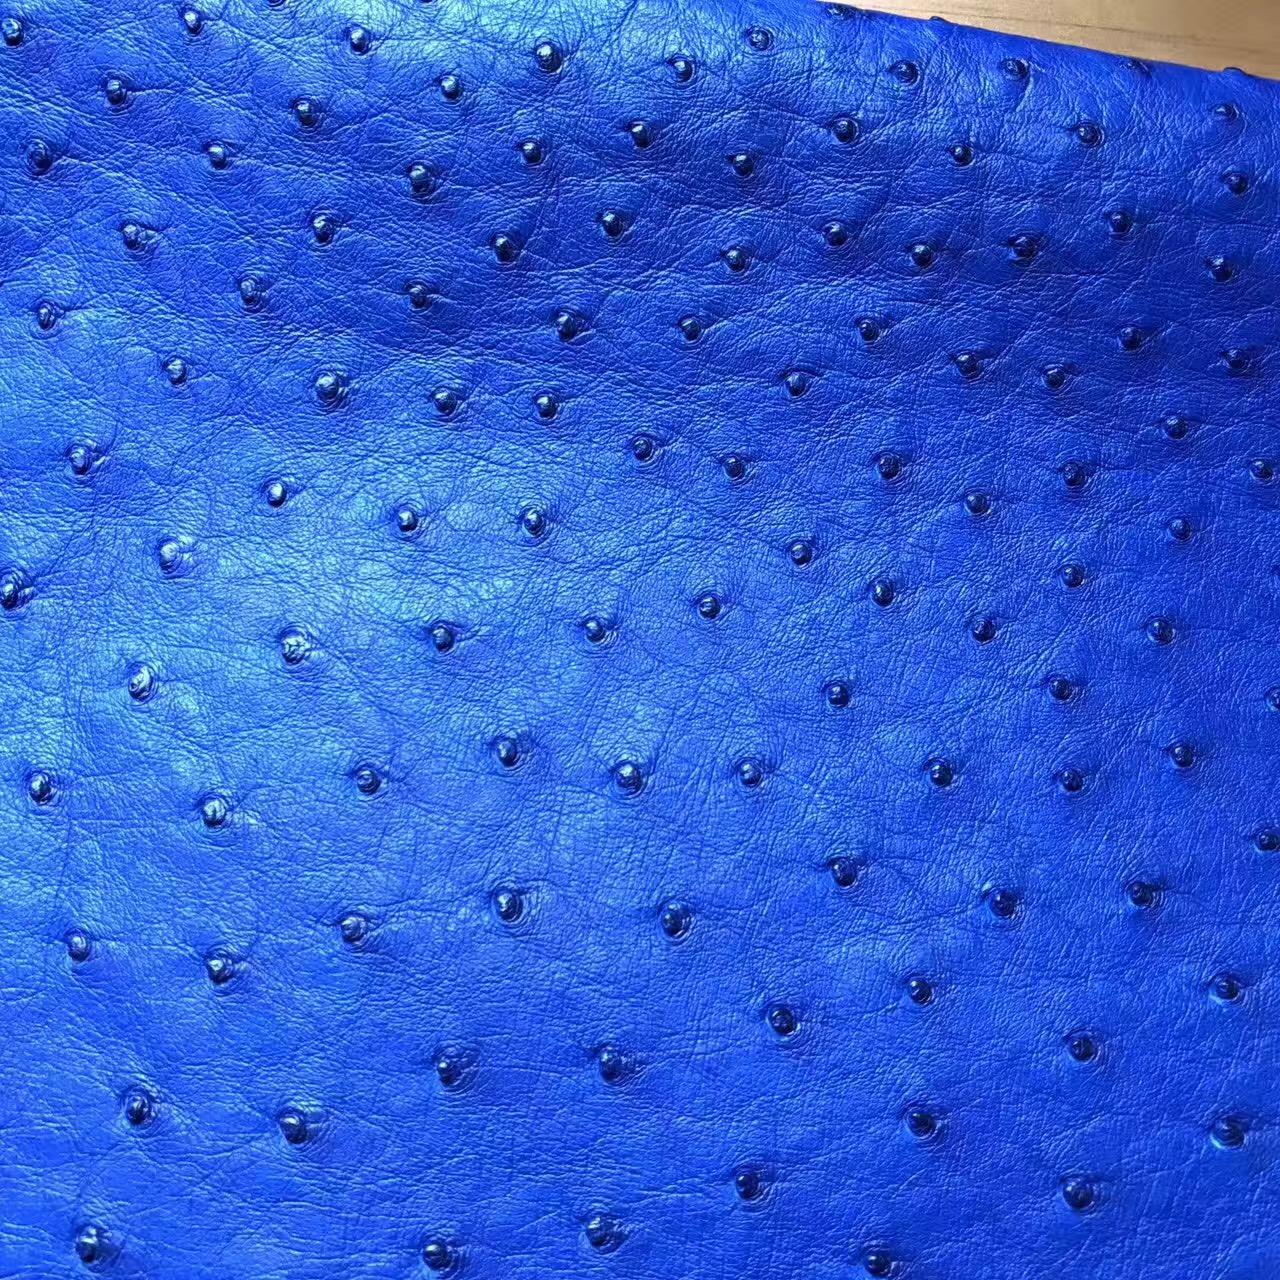 鴕鳥皮是世界上最名貴的優質皮革 7T Blue Electric電光藍 鴕鳥皮